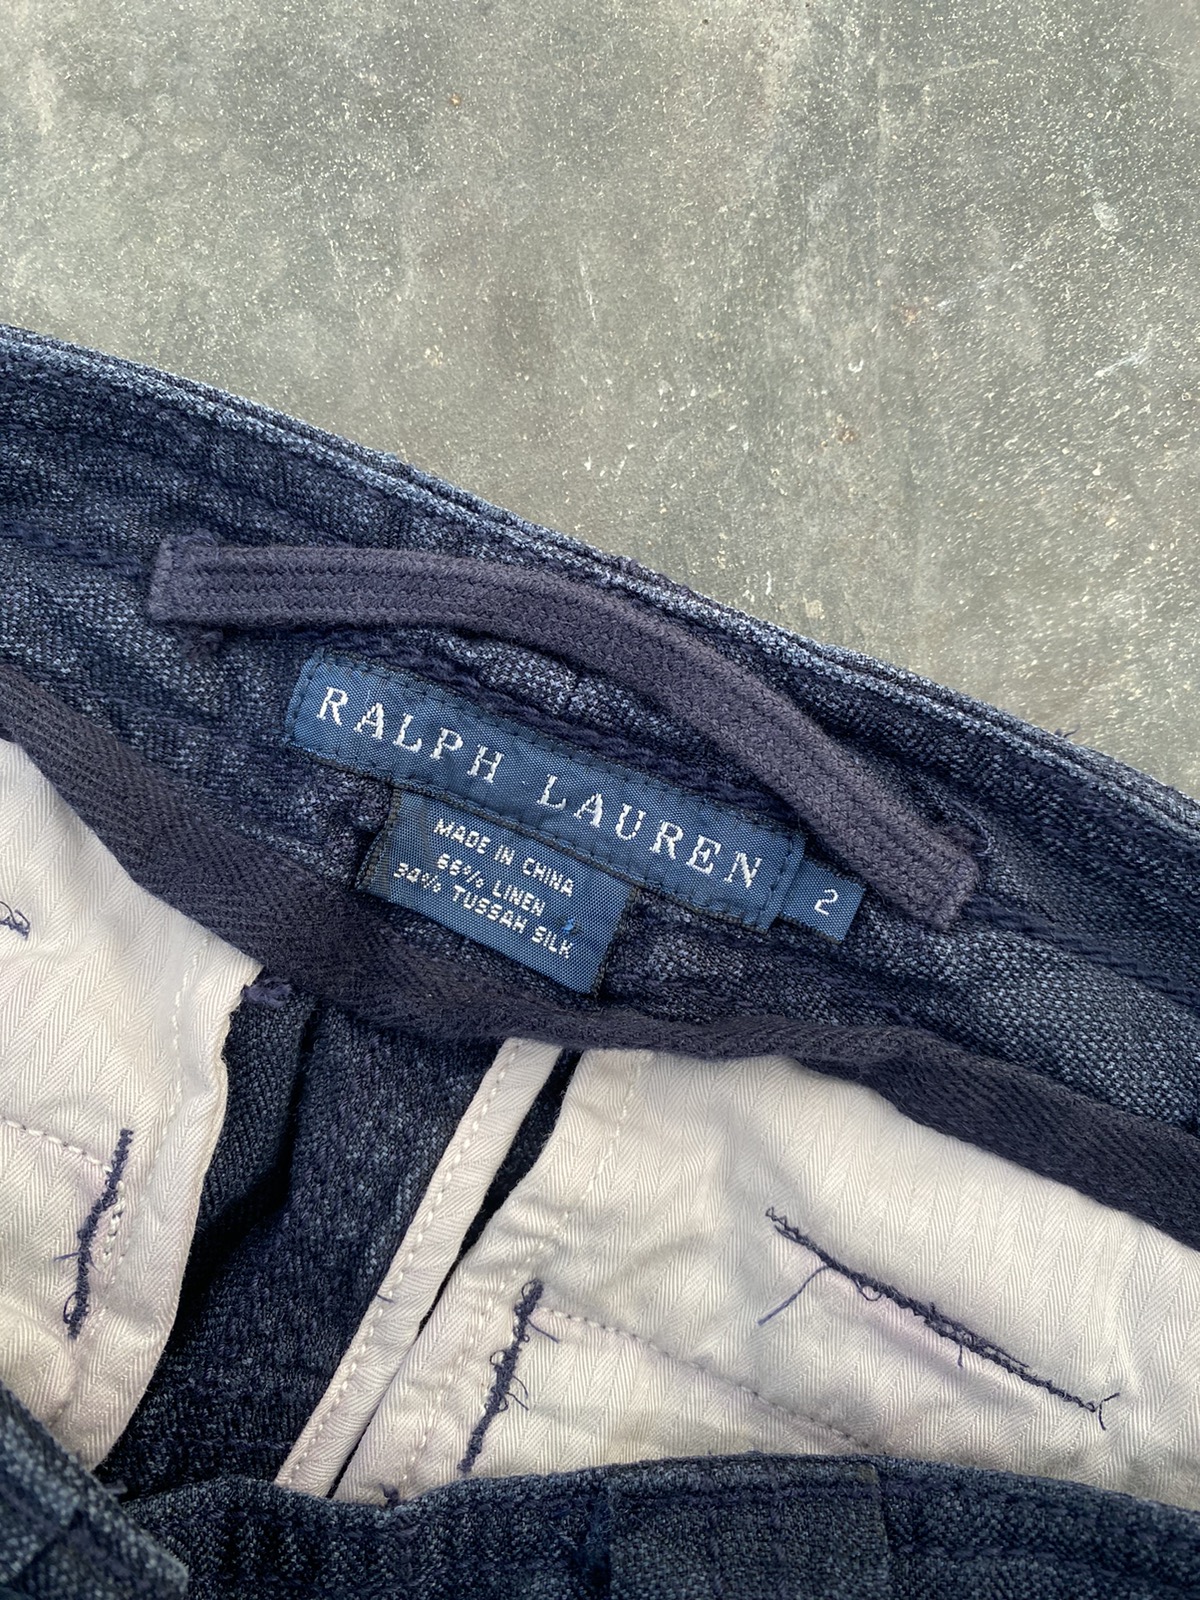 Statement pant 🔥 Vintage Ralph Lauren Linen Cargo Pant - 8